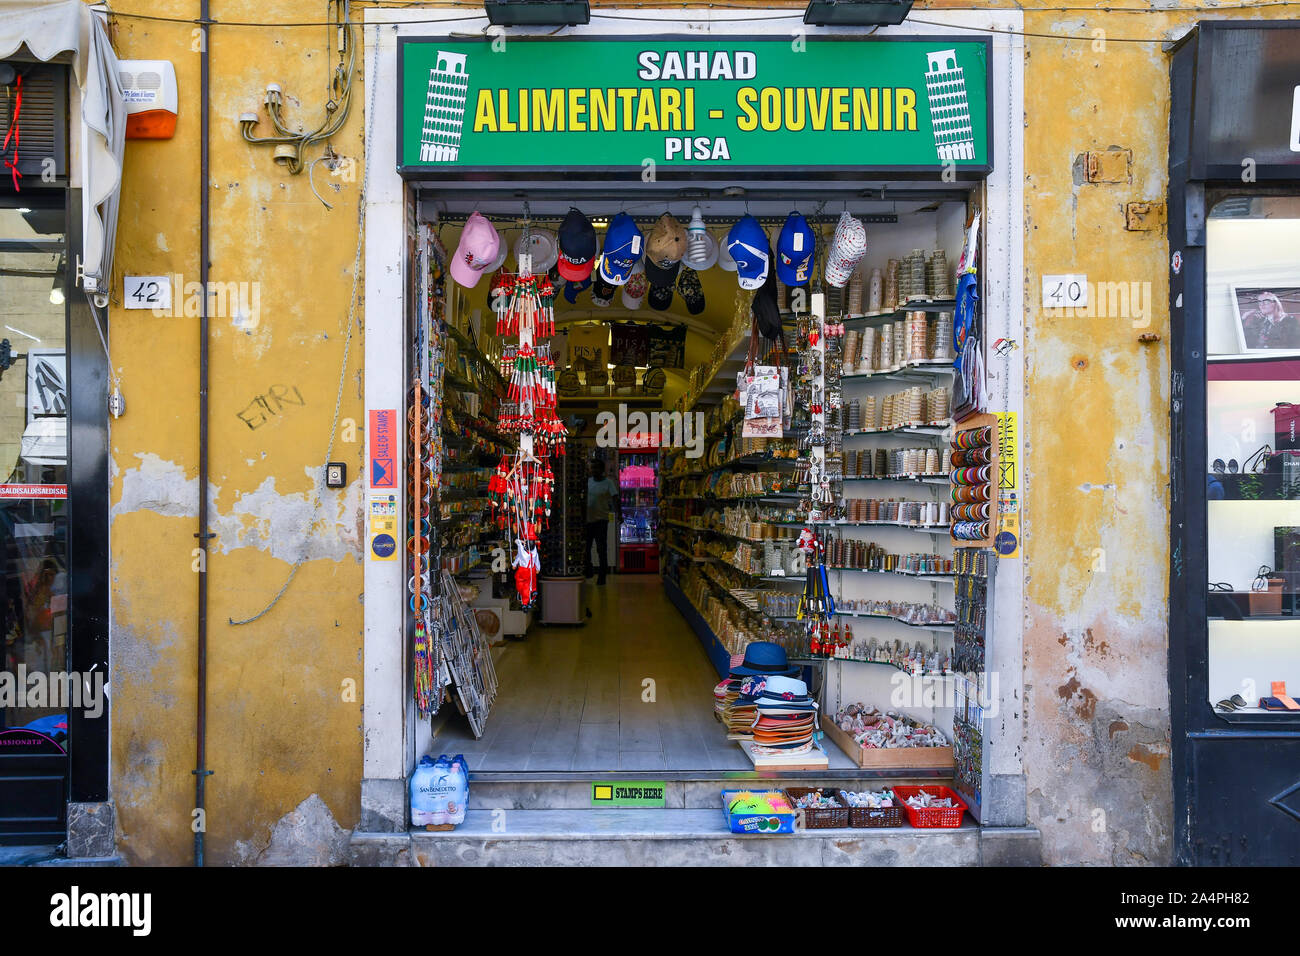 Nahaufnahme der Eingang eines ausländischen Lebensmittelgeschäft und Souvenir Shop im historischen Zentrum der berühmten Stadt Pisa, Toskana, Italien Stockfoto